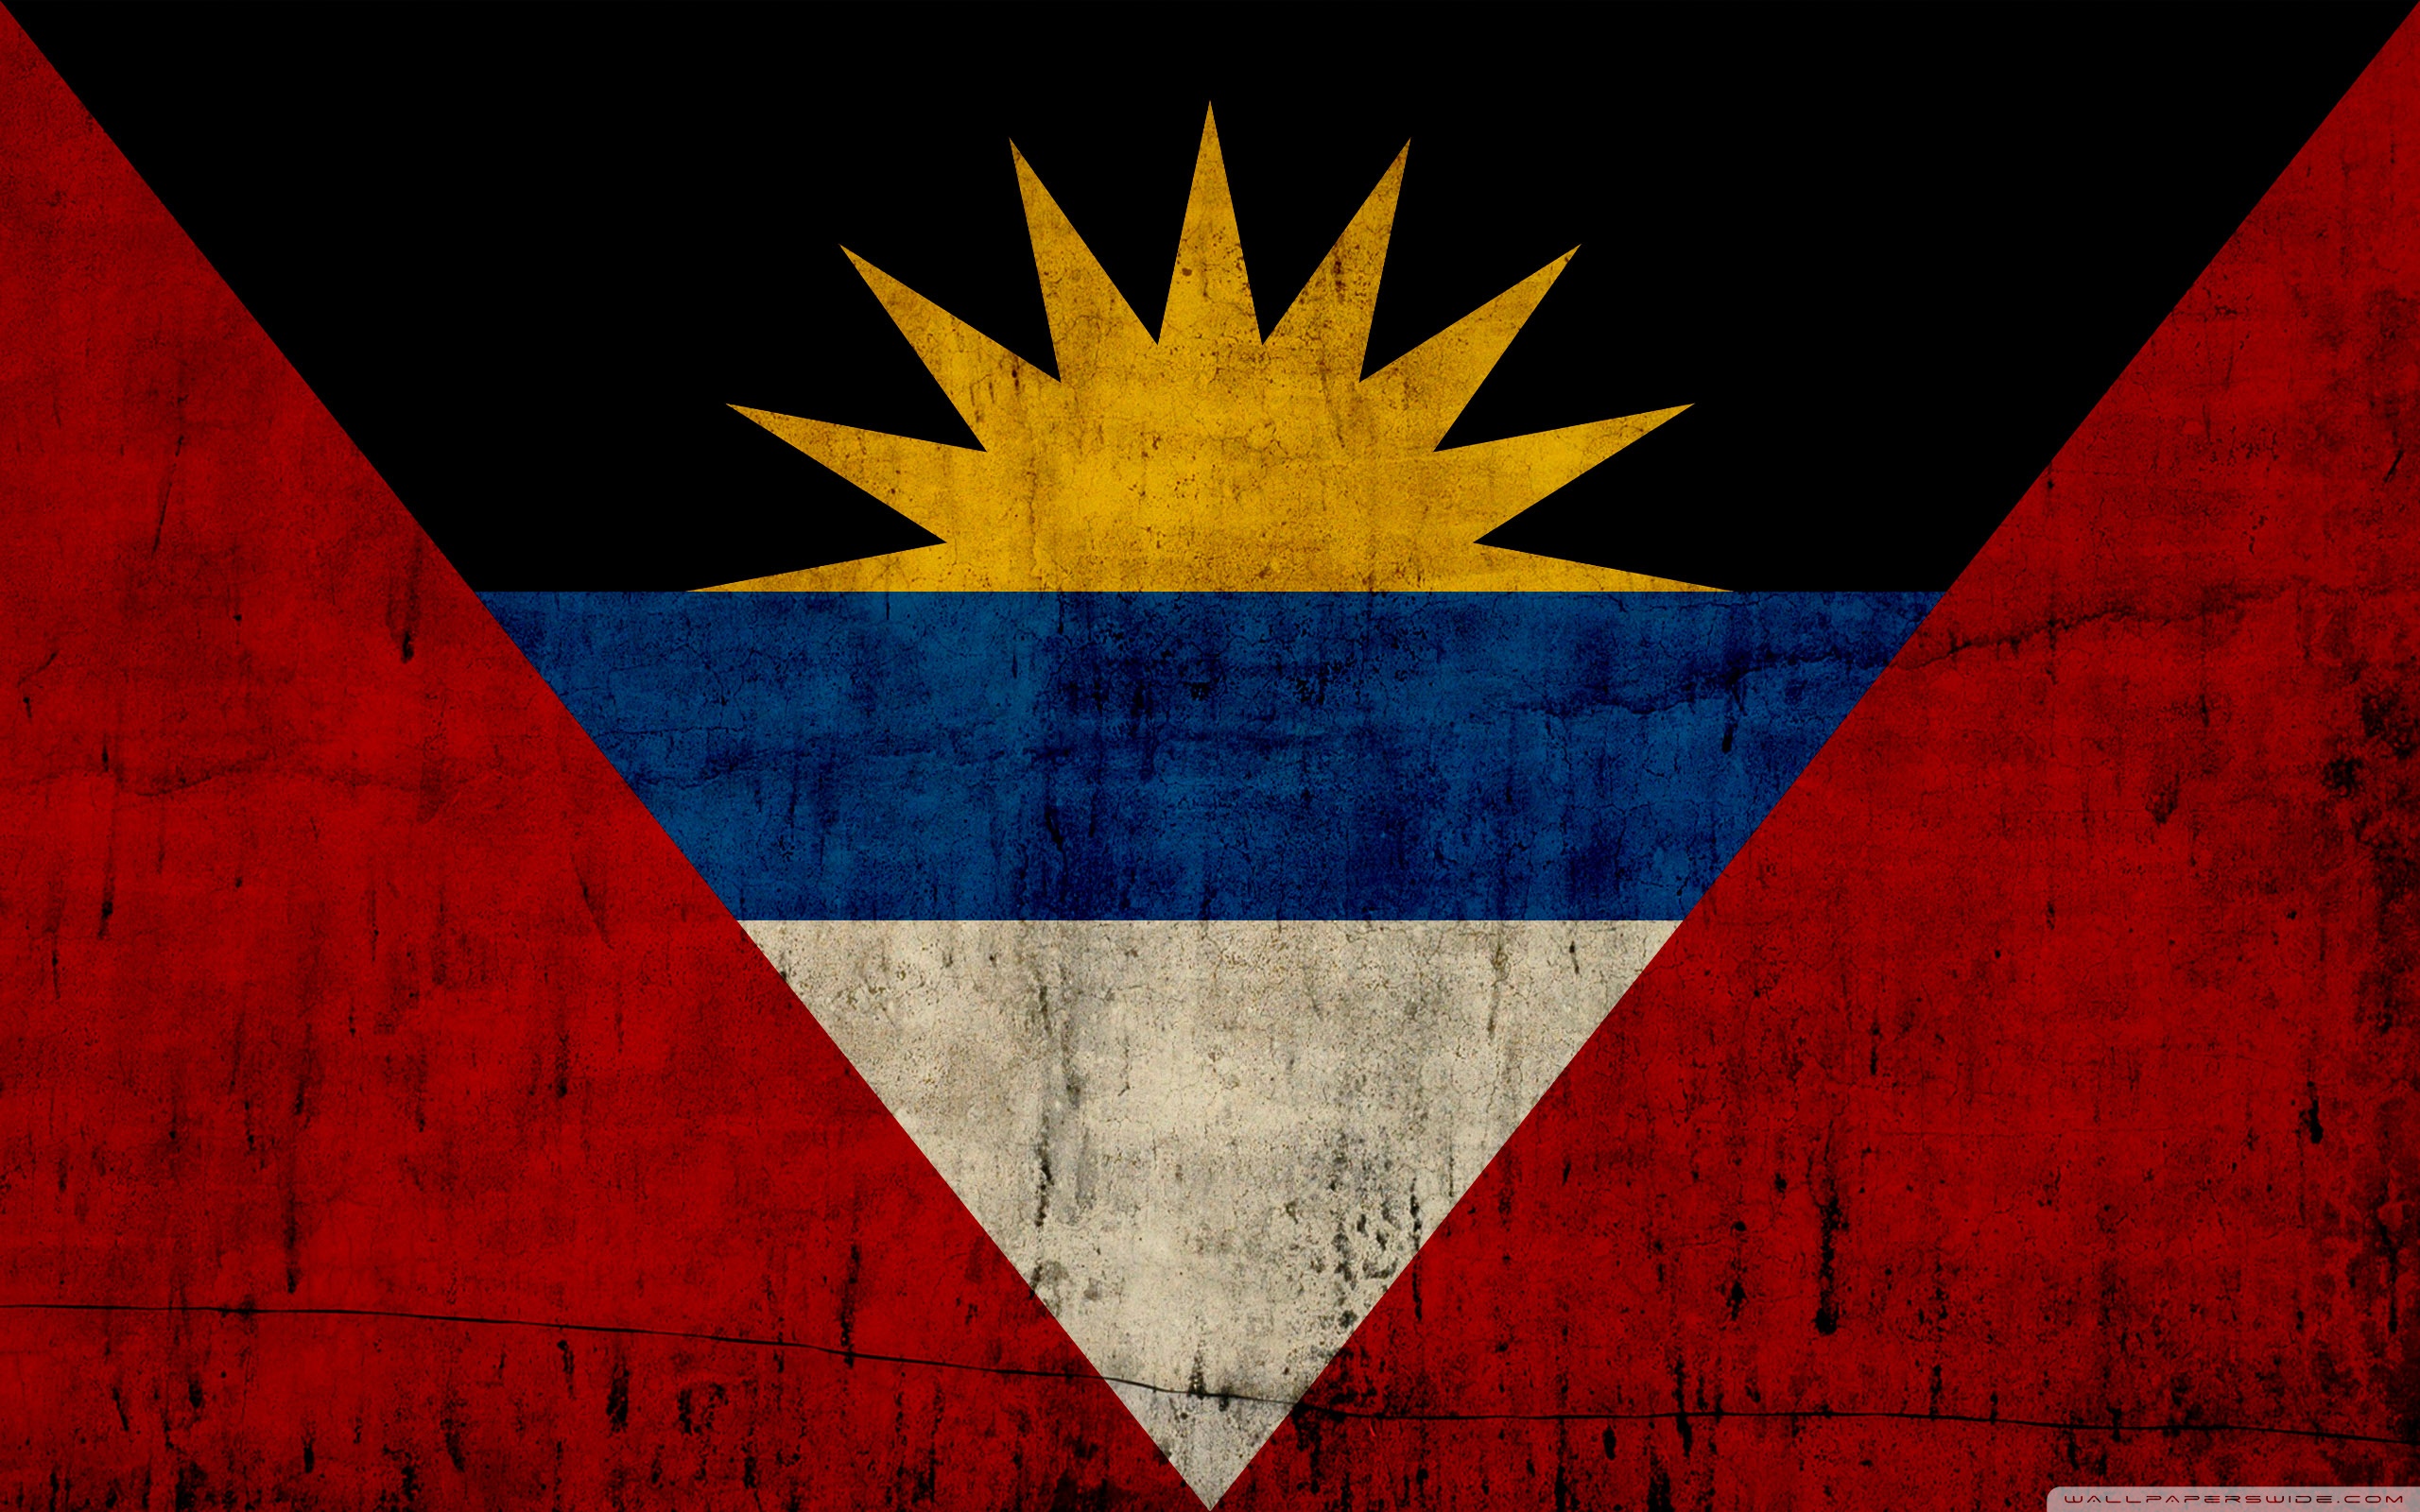 Antigua And Barbuda Flag Wallpaper On